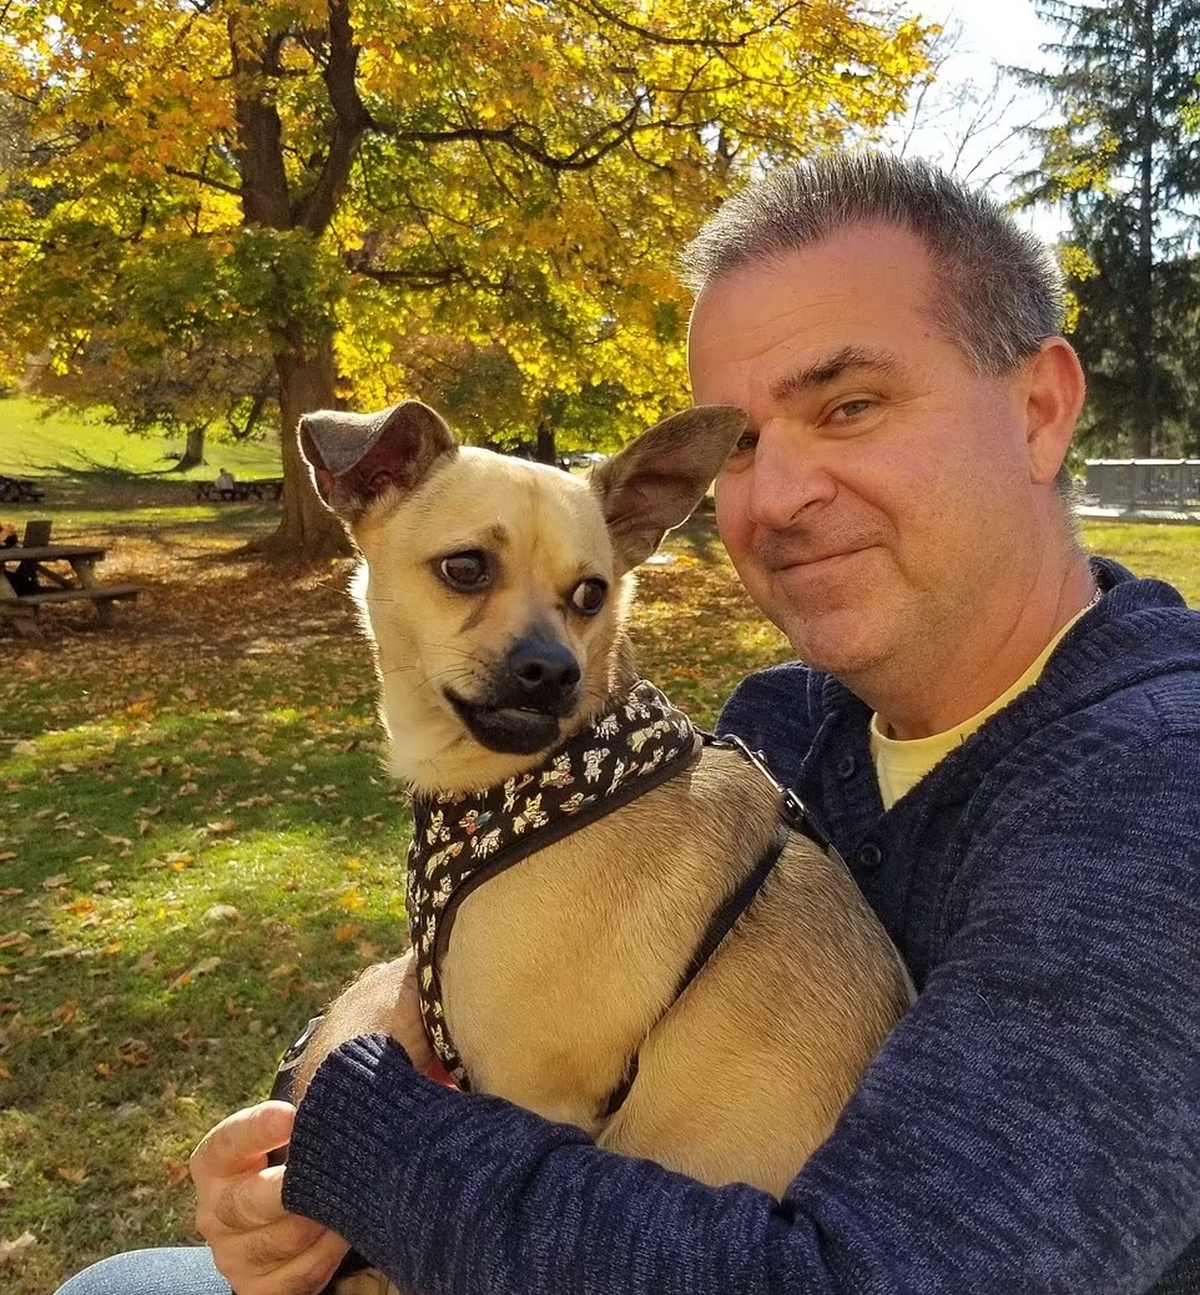 William Morrison, de 53 años, con su amado perro después de que terminó el ensayo clínico